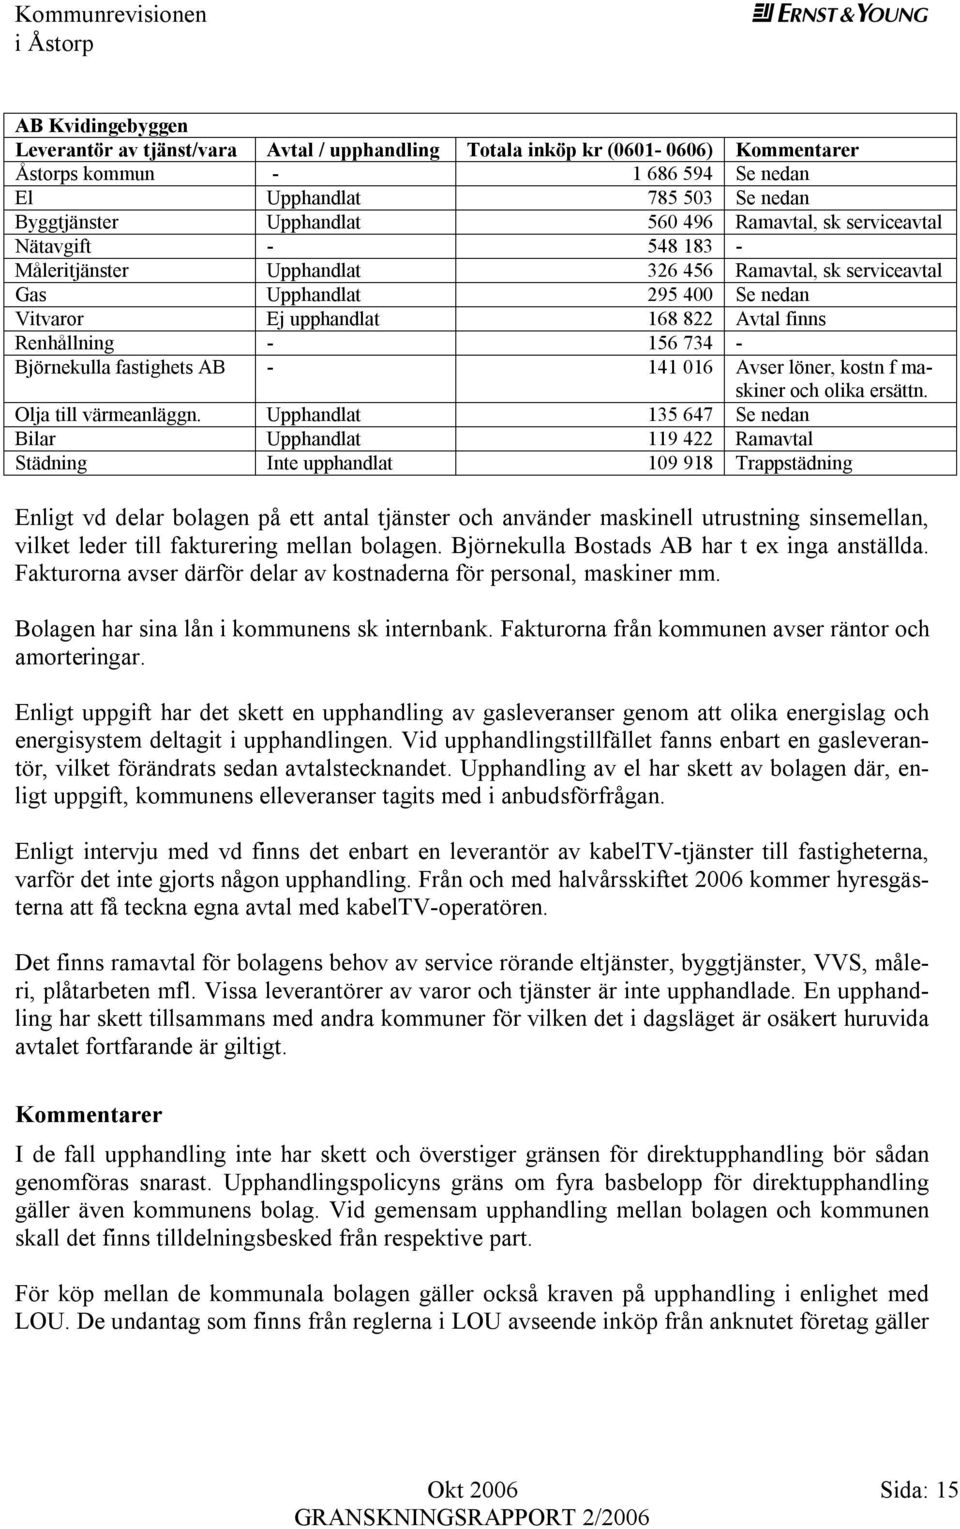 - 156 734 - Björnekulla fastighets AB - 141 016 Avser löner, kostn f maskiner och olika ersättn. Olja till värmeanläggn.